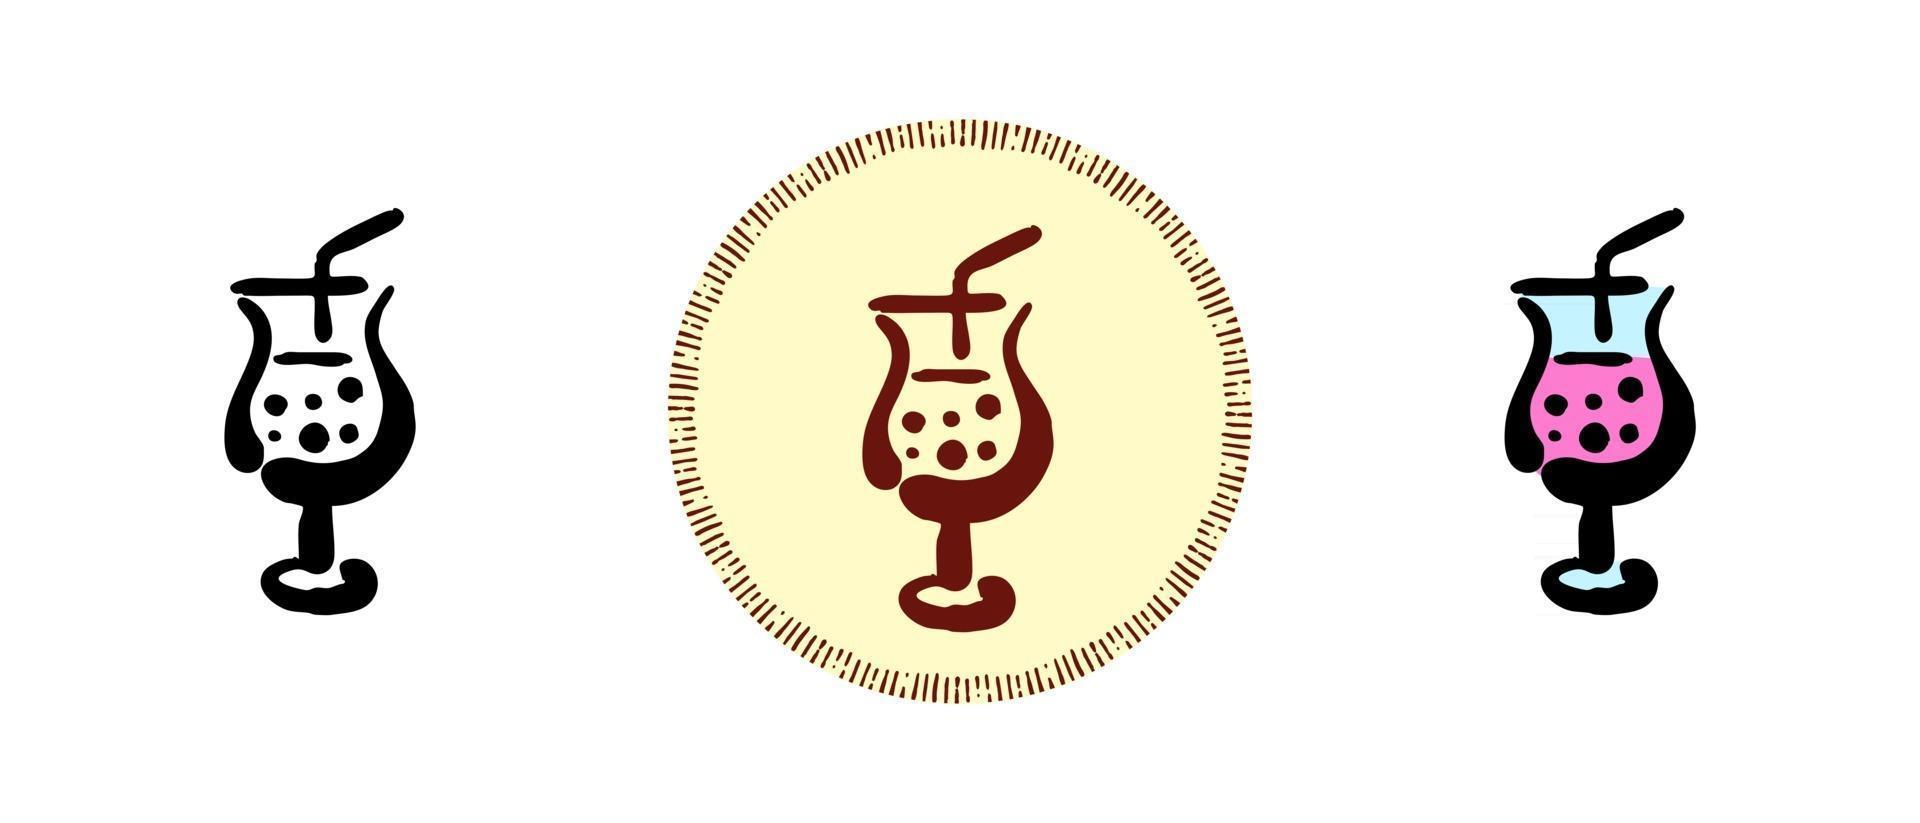 couleur de contour et symboles de cocktails rétro vecteur